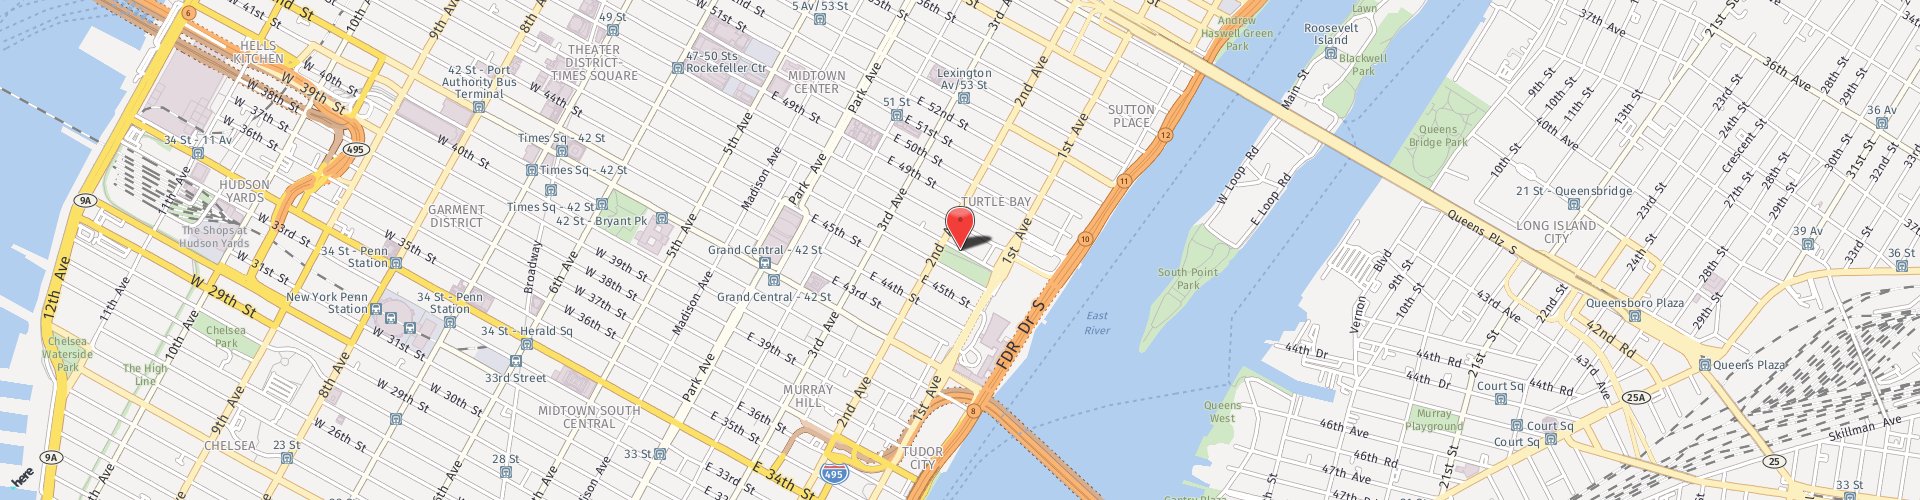 Location Map: 305 East 47th Street New York, NY 10017